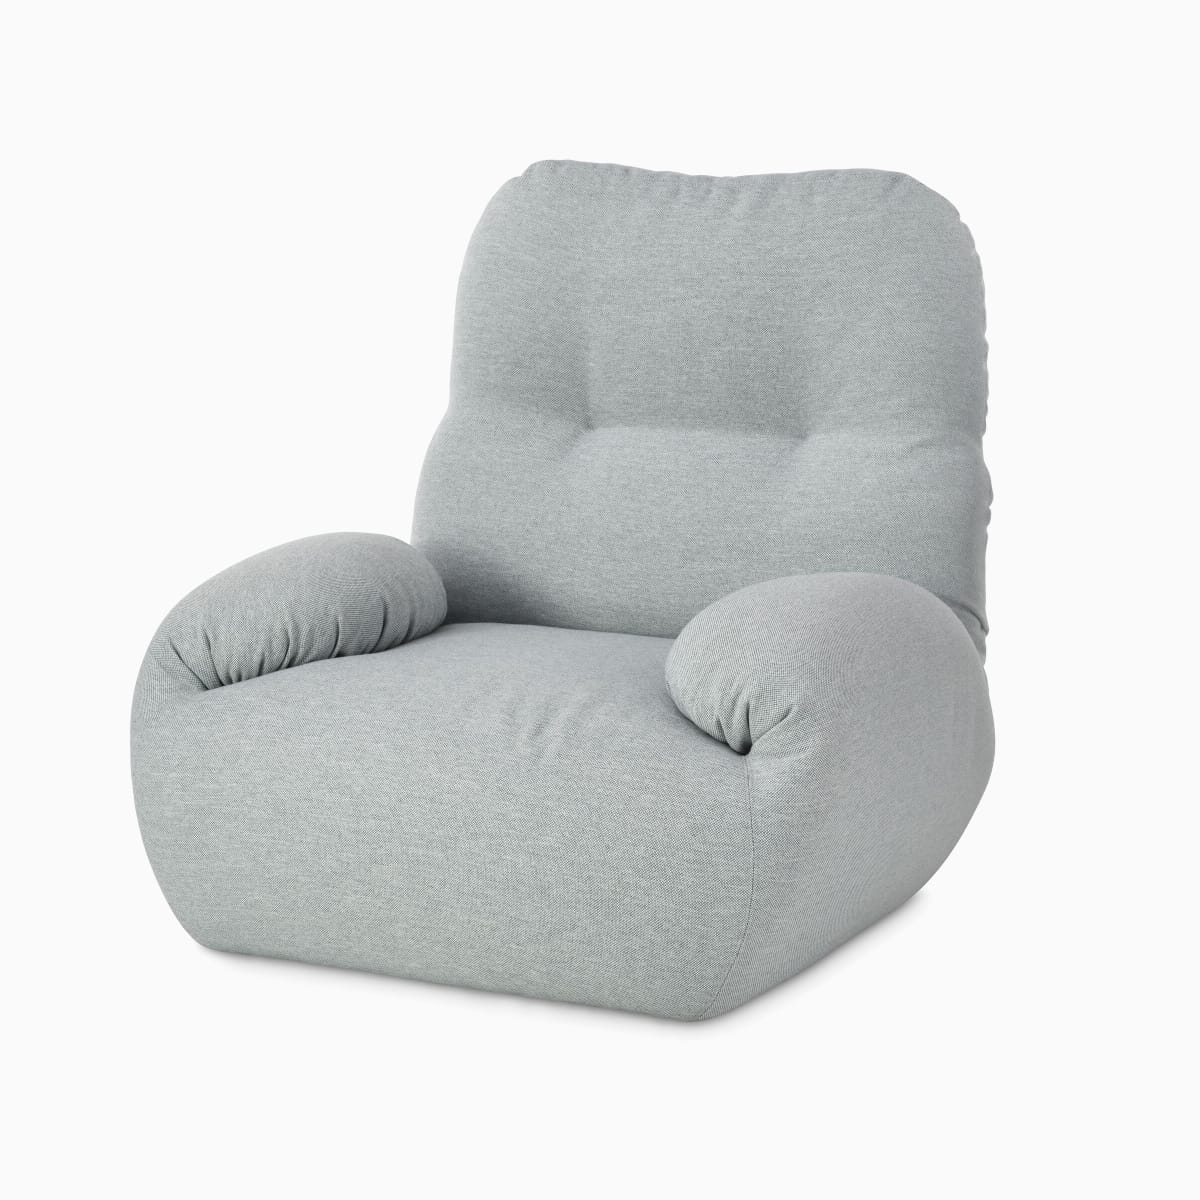 Luva Modular Sofa, armchair open.